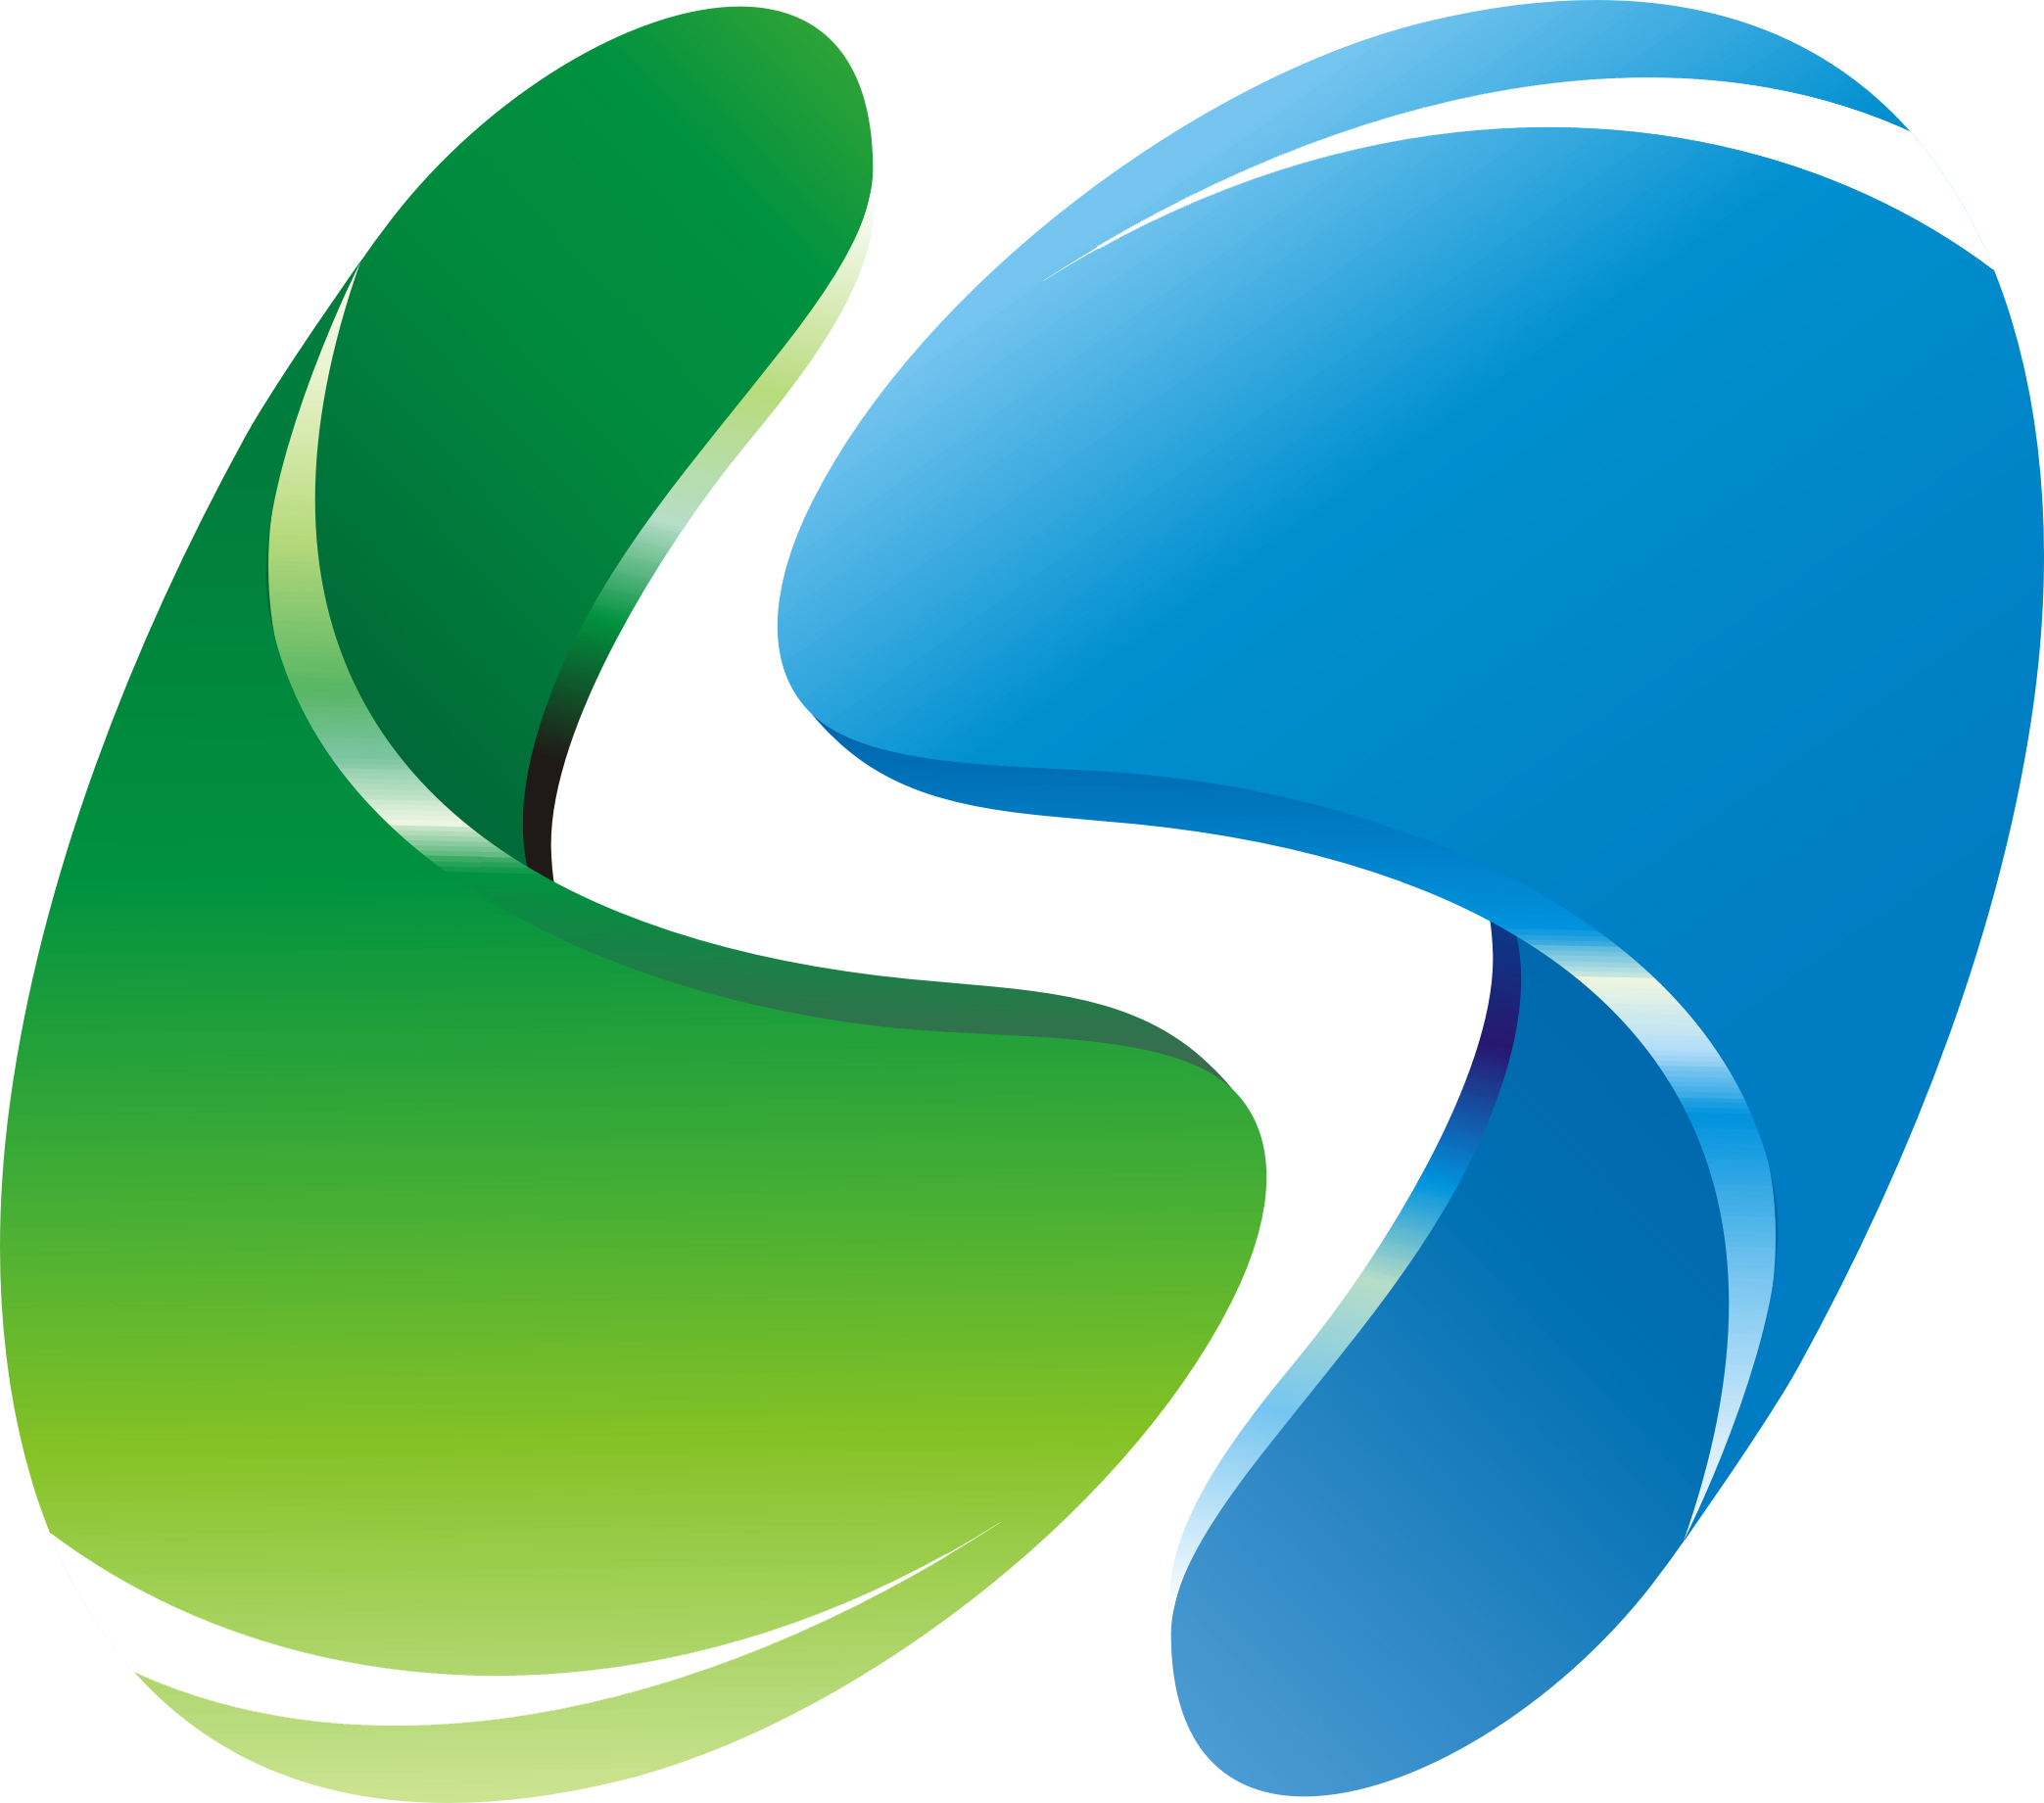 青岛西海岸新区logo图片